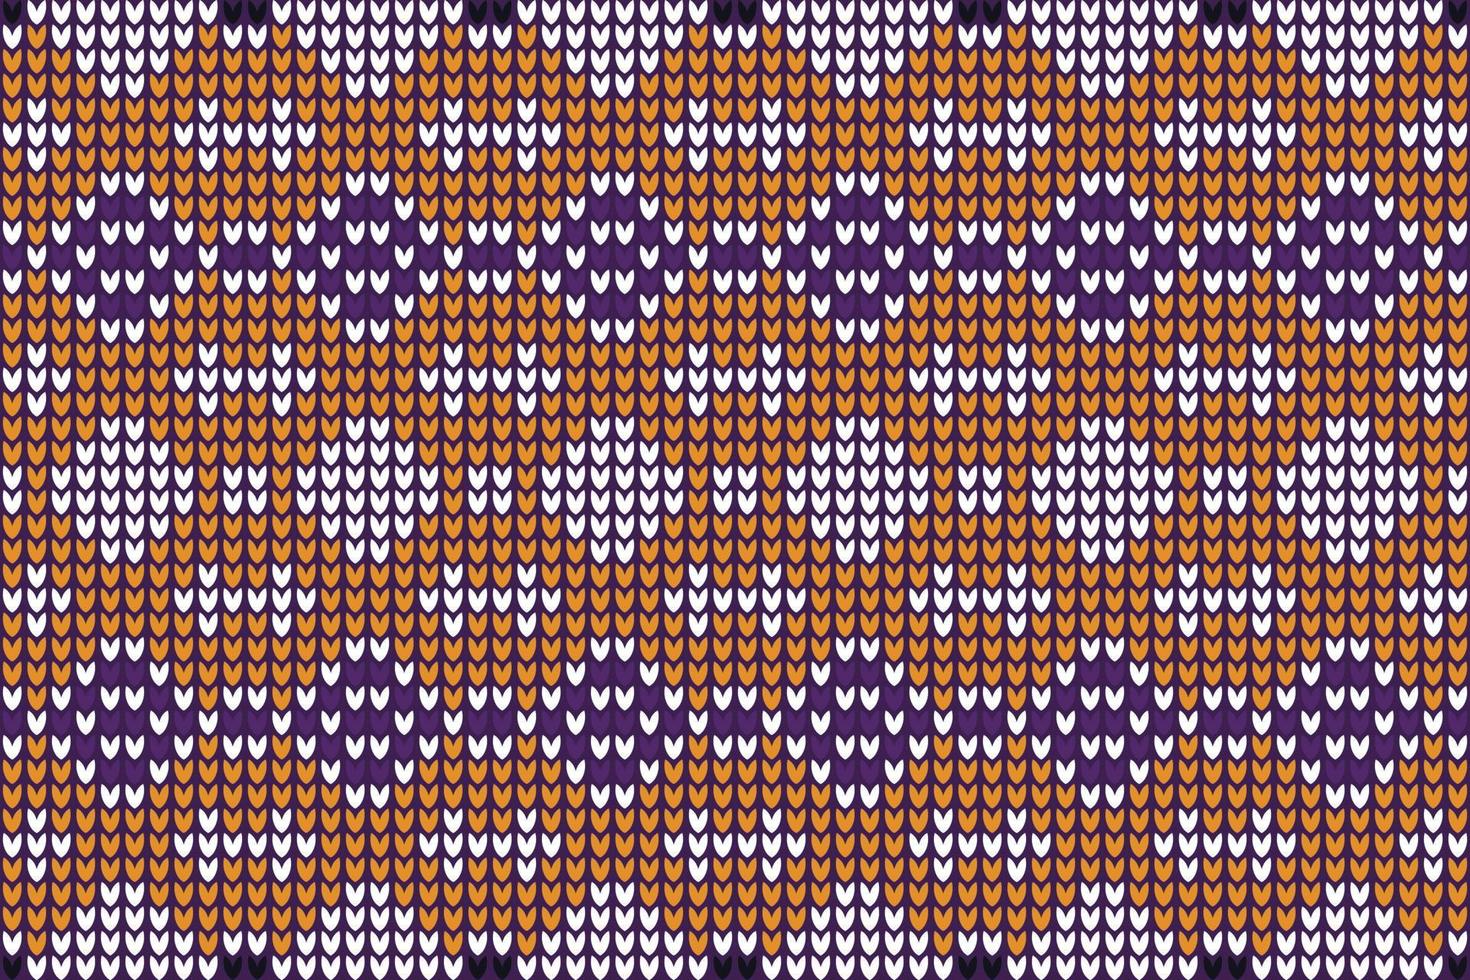 tejido a ganchillo el patrón está tejido a ganchillo con hilo acrílico multicolor brillante. motivos africanos. vector